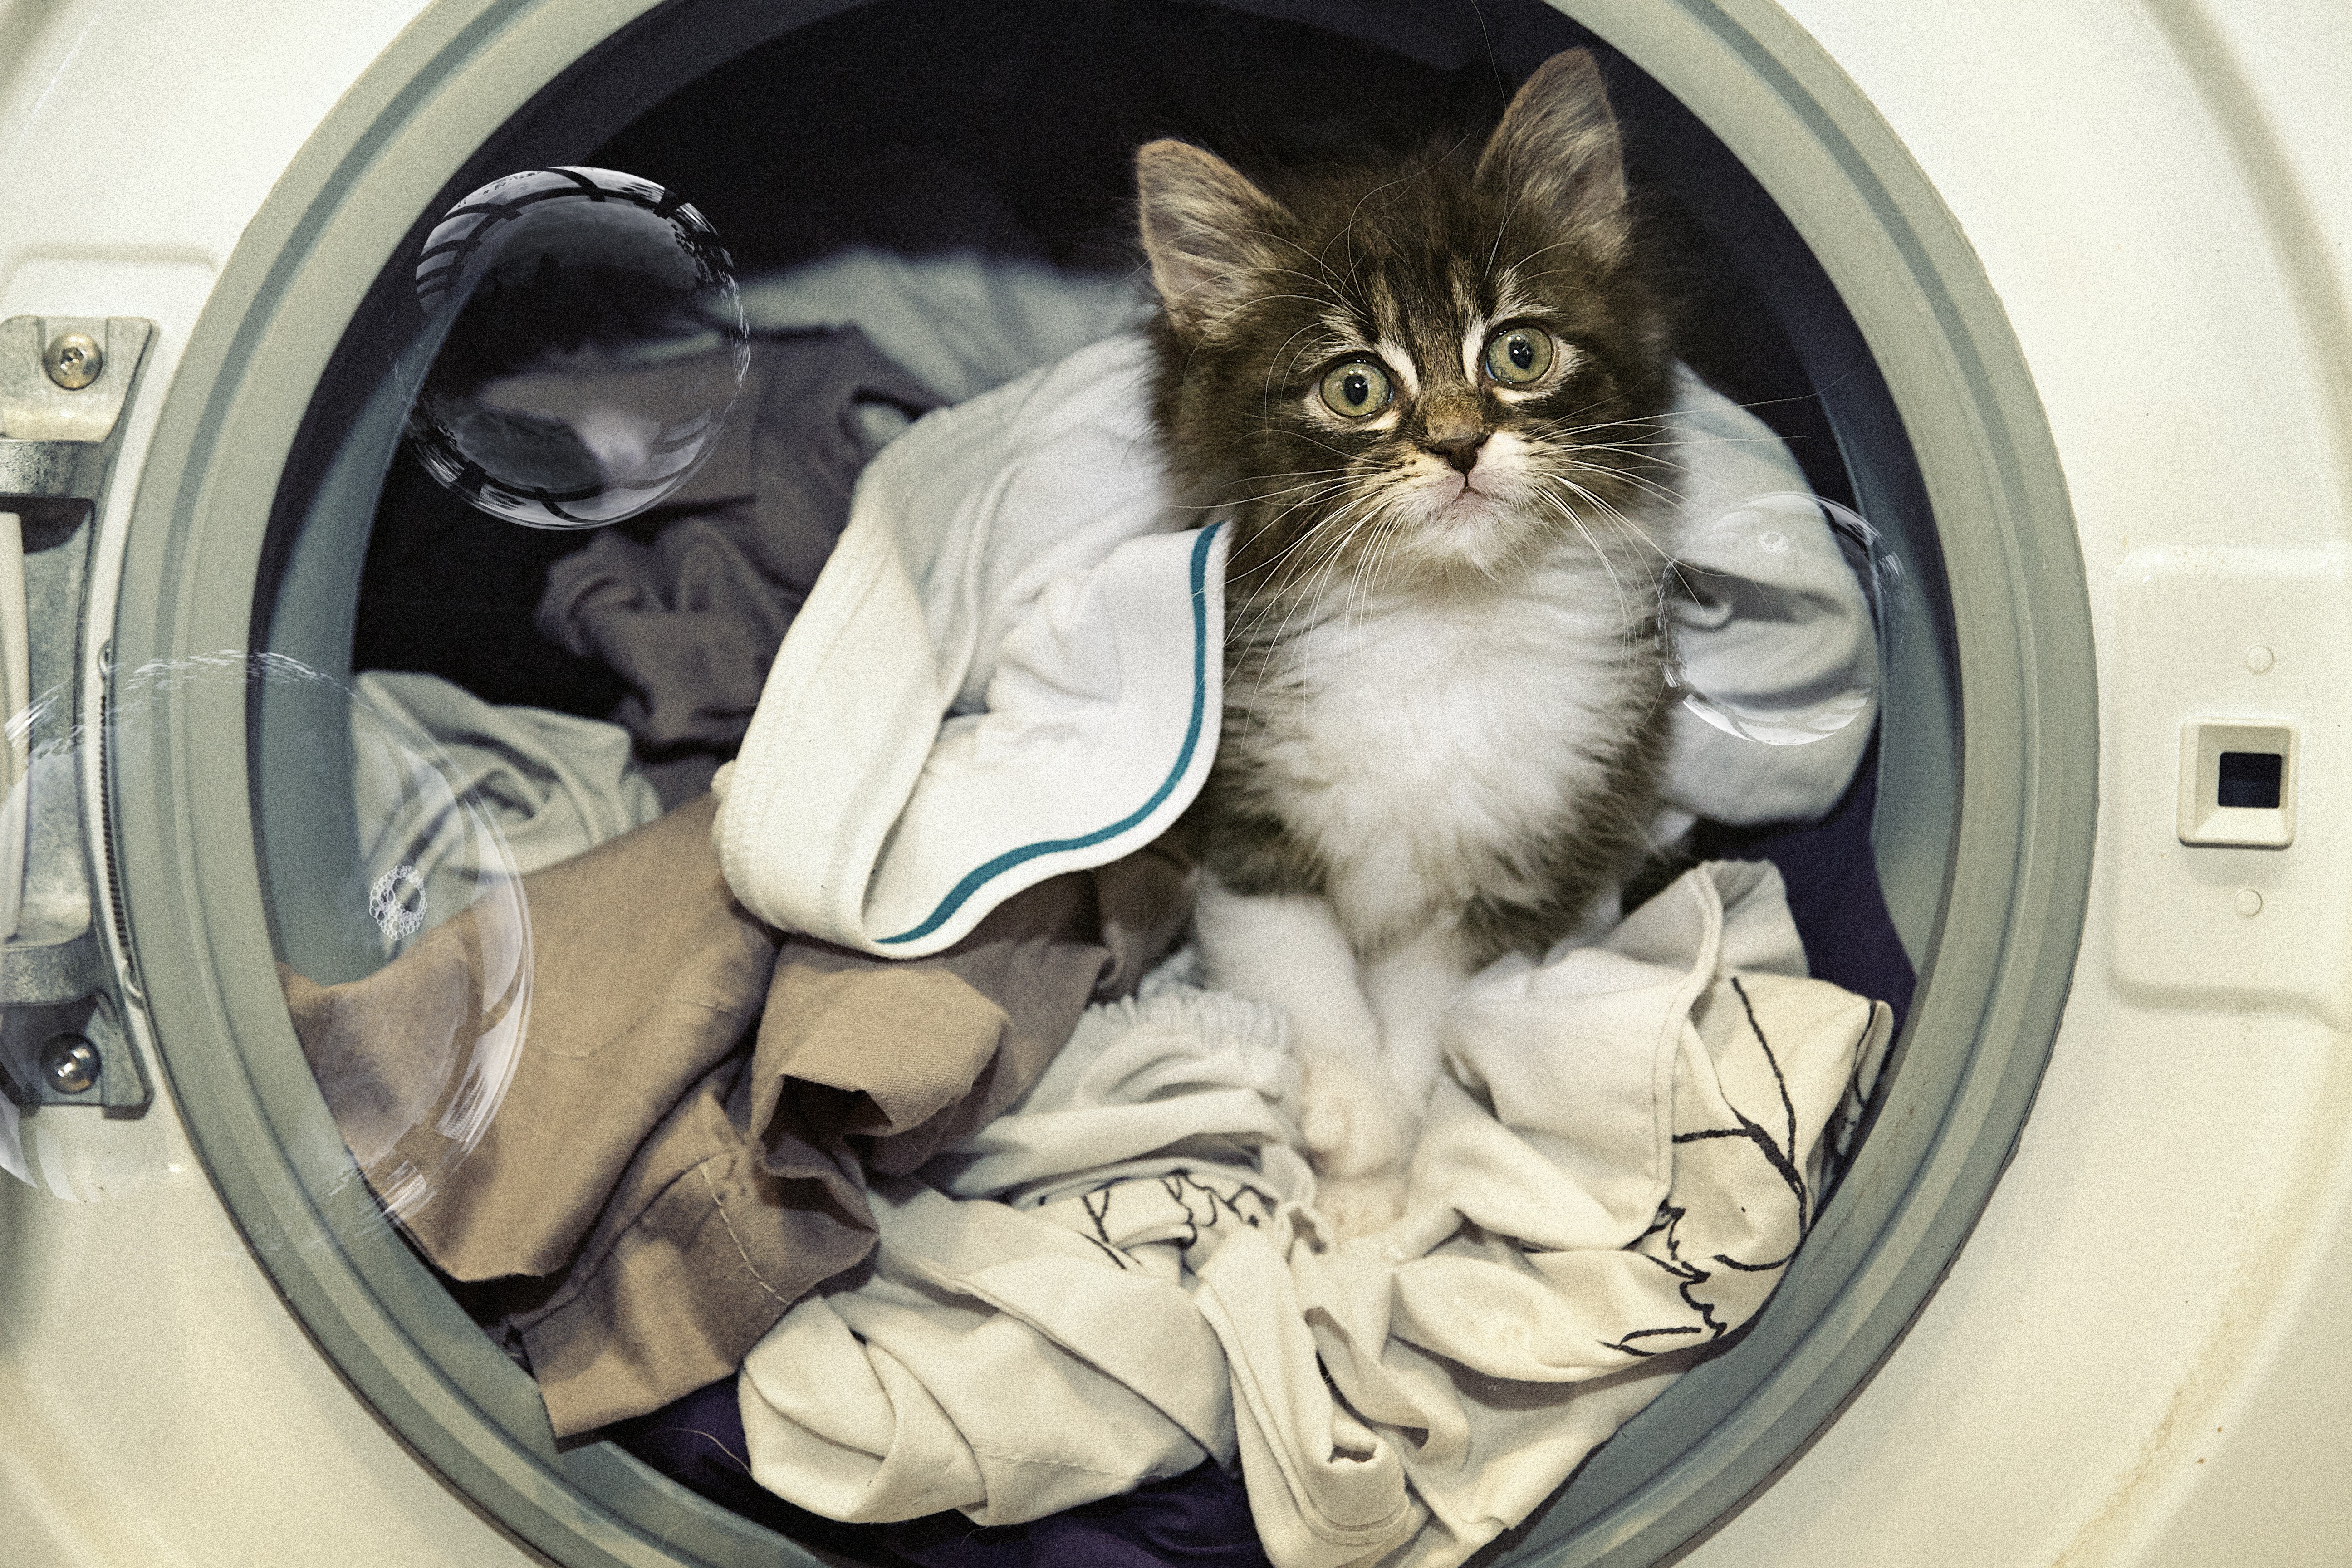 Gato sobrevive depois de ficar preso por 12 minutos em máquina de lavar ligada e com água quente (Foto: Getty Images)